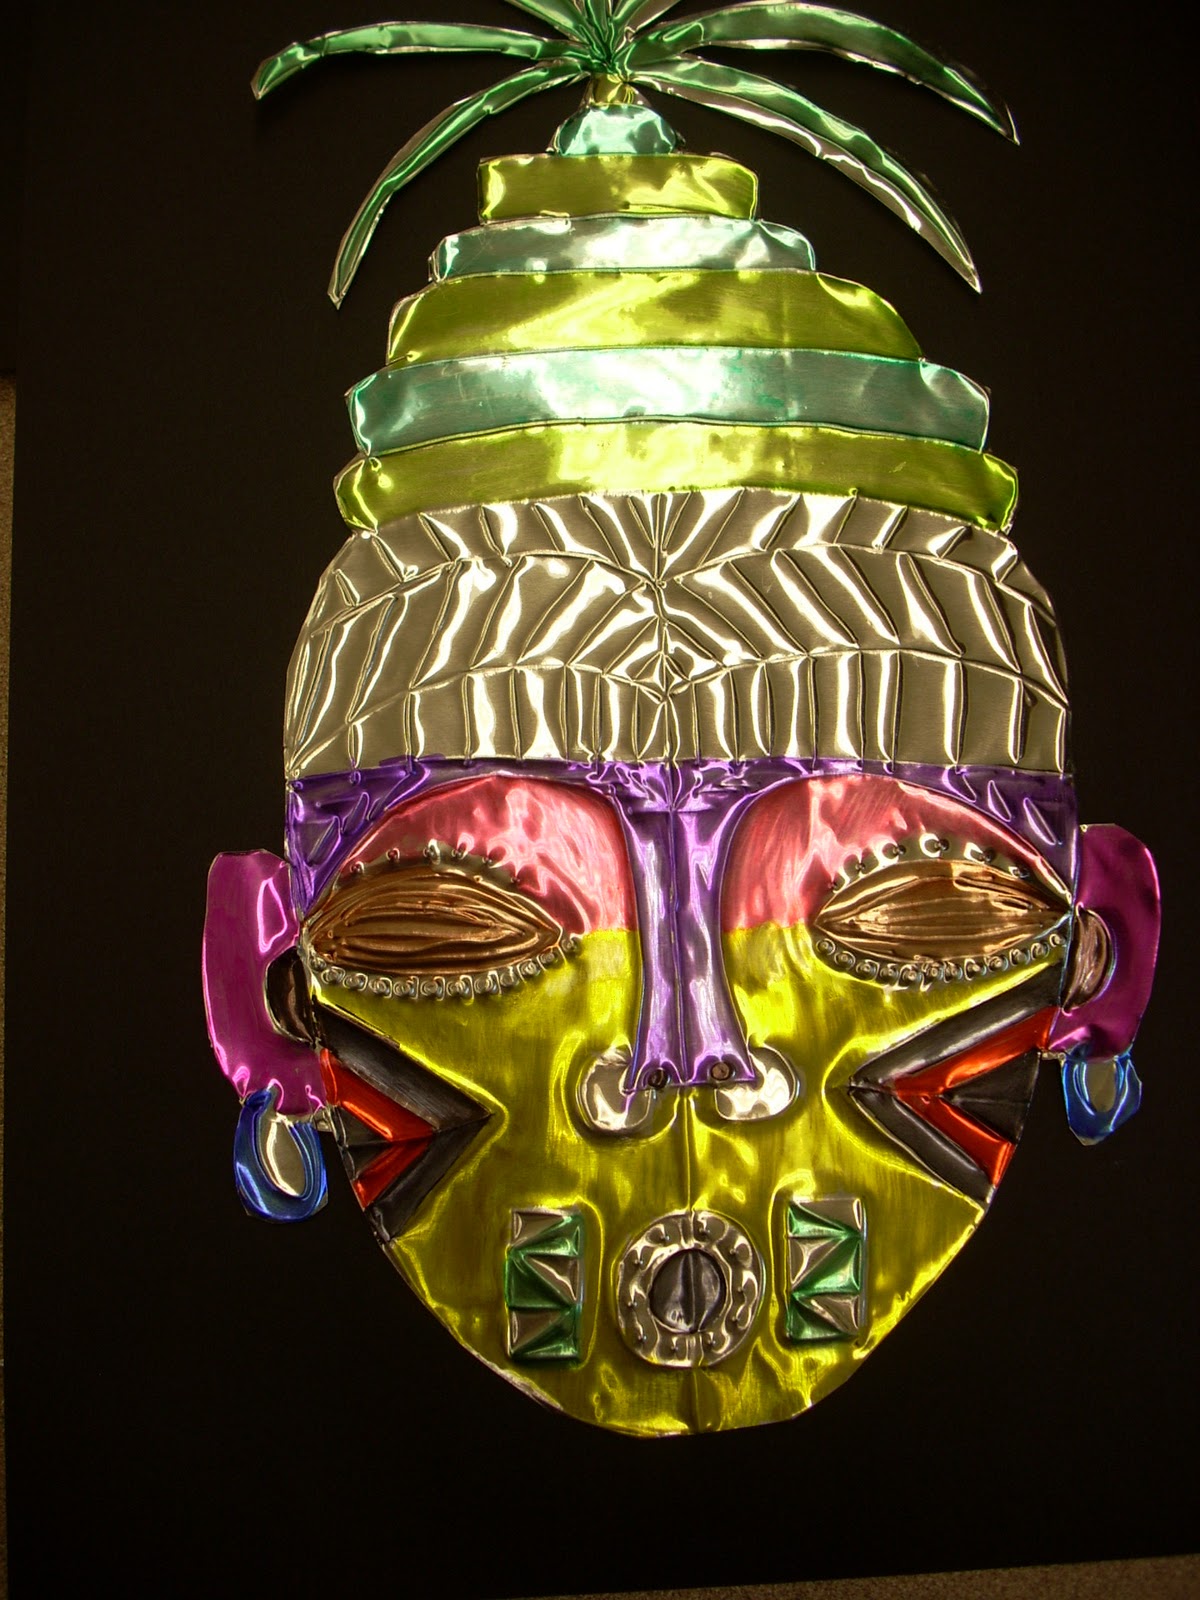 Tribal Mask Art